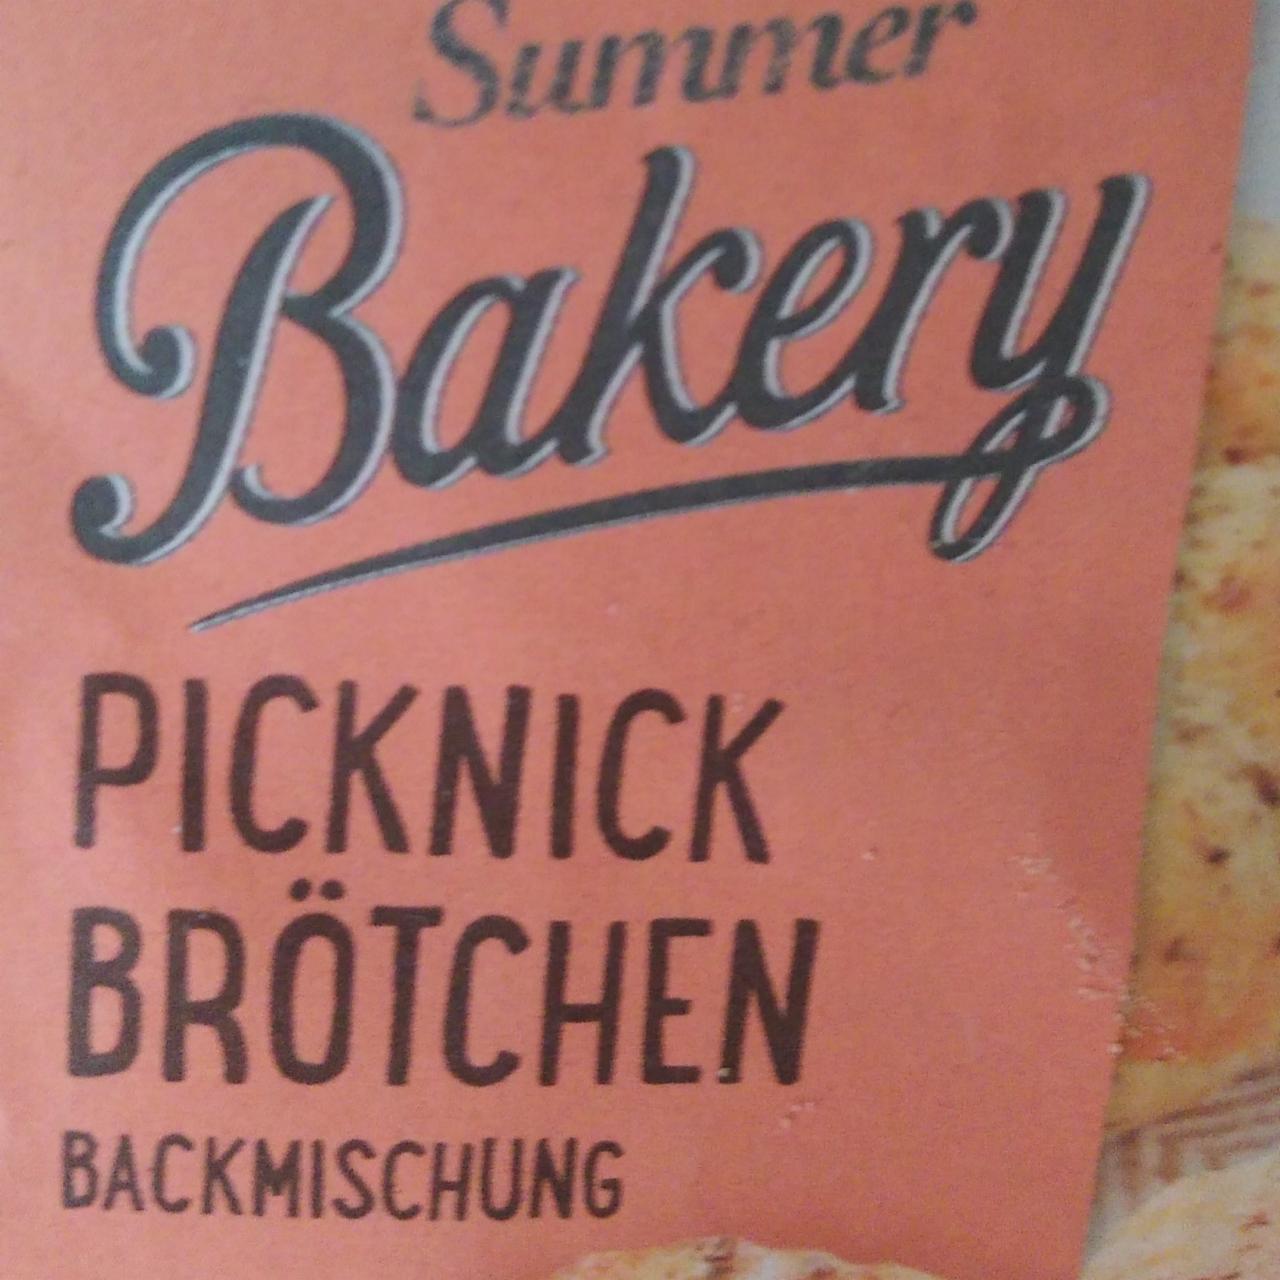 Fotografie - Picknick Brötchen Backmischung Summer Bakery